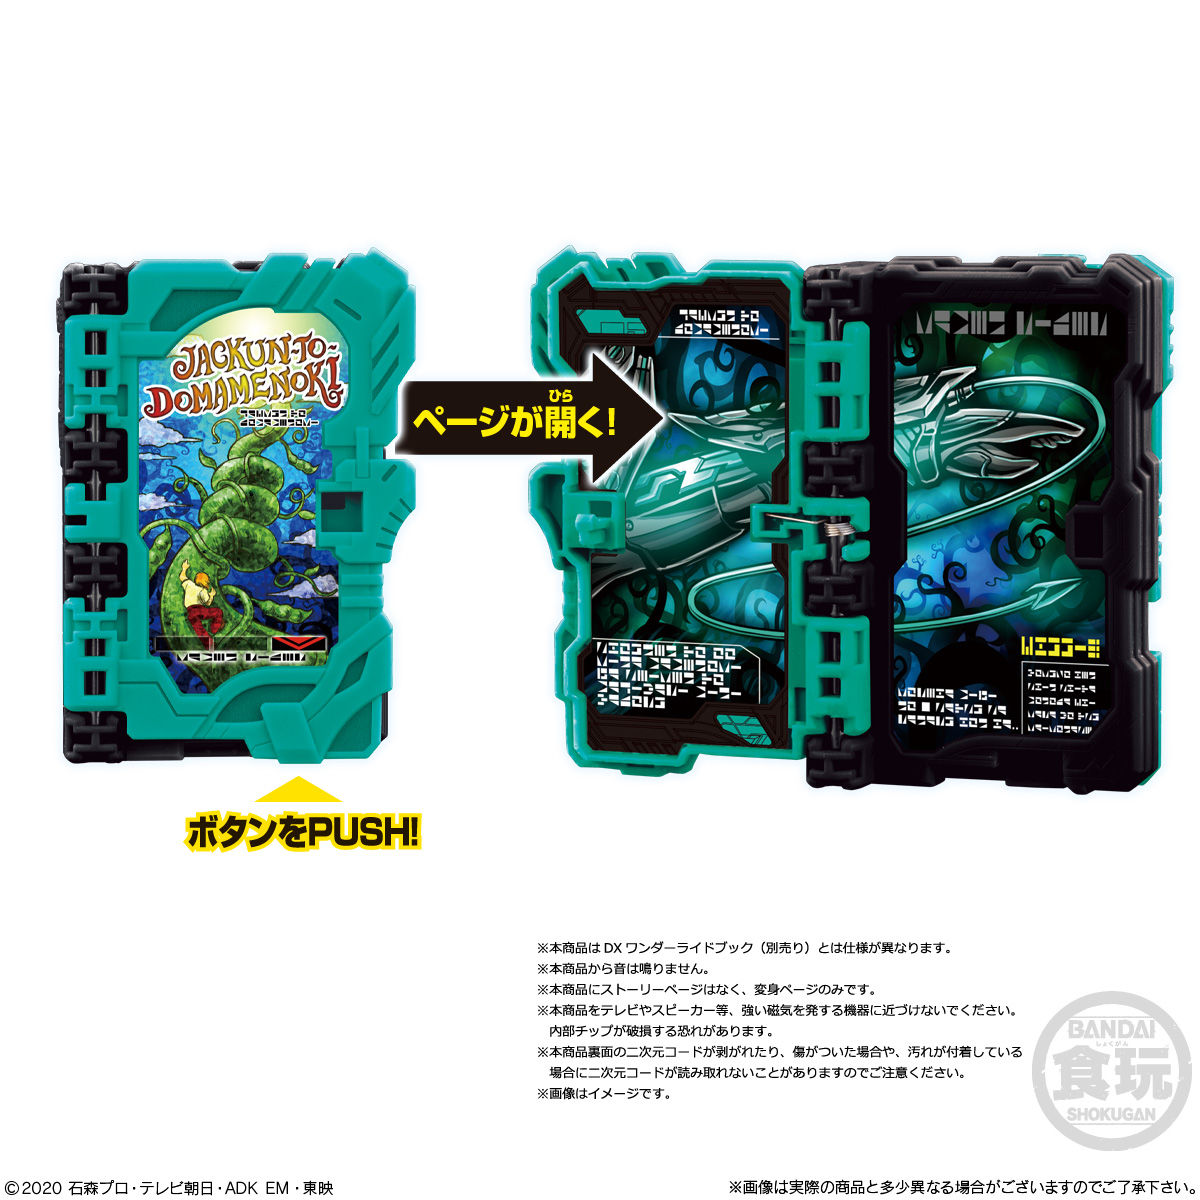 【食玩】仮面ライダーセイバー『コレクタブルワンダーライドブック SG02』8個入りBOX-006